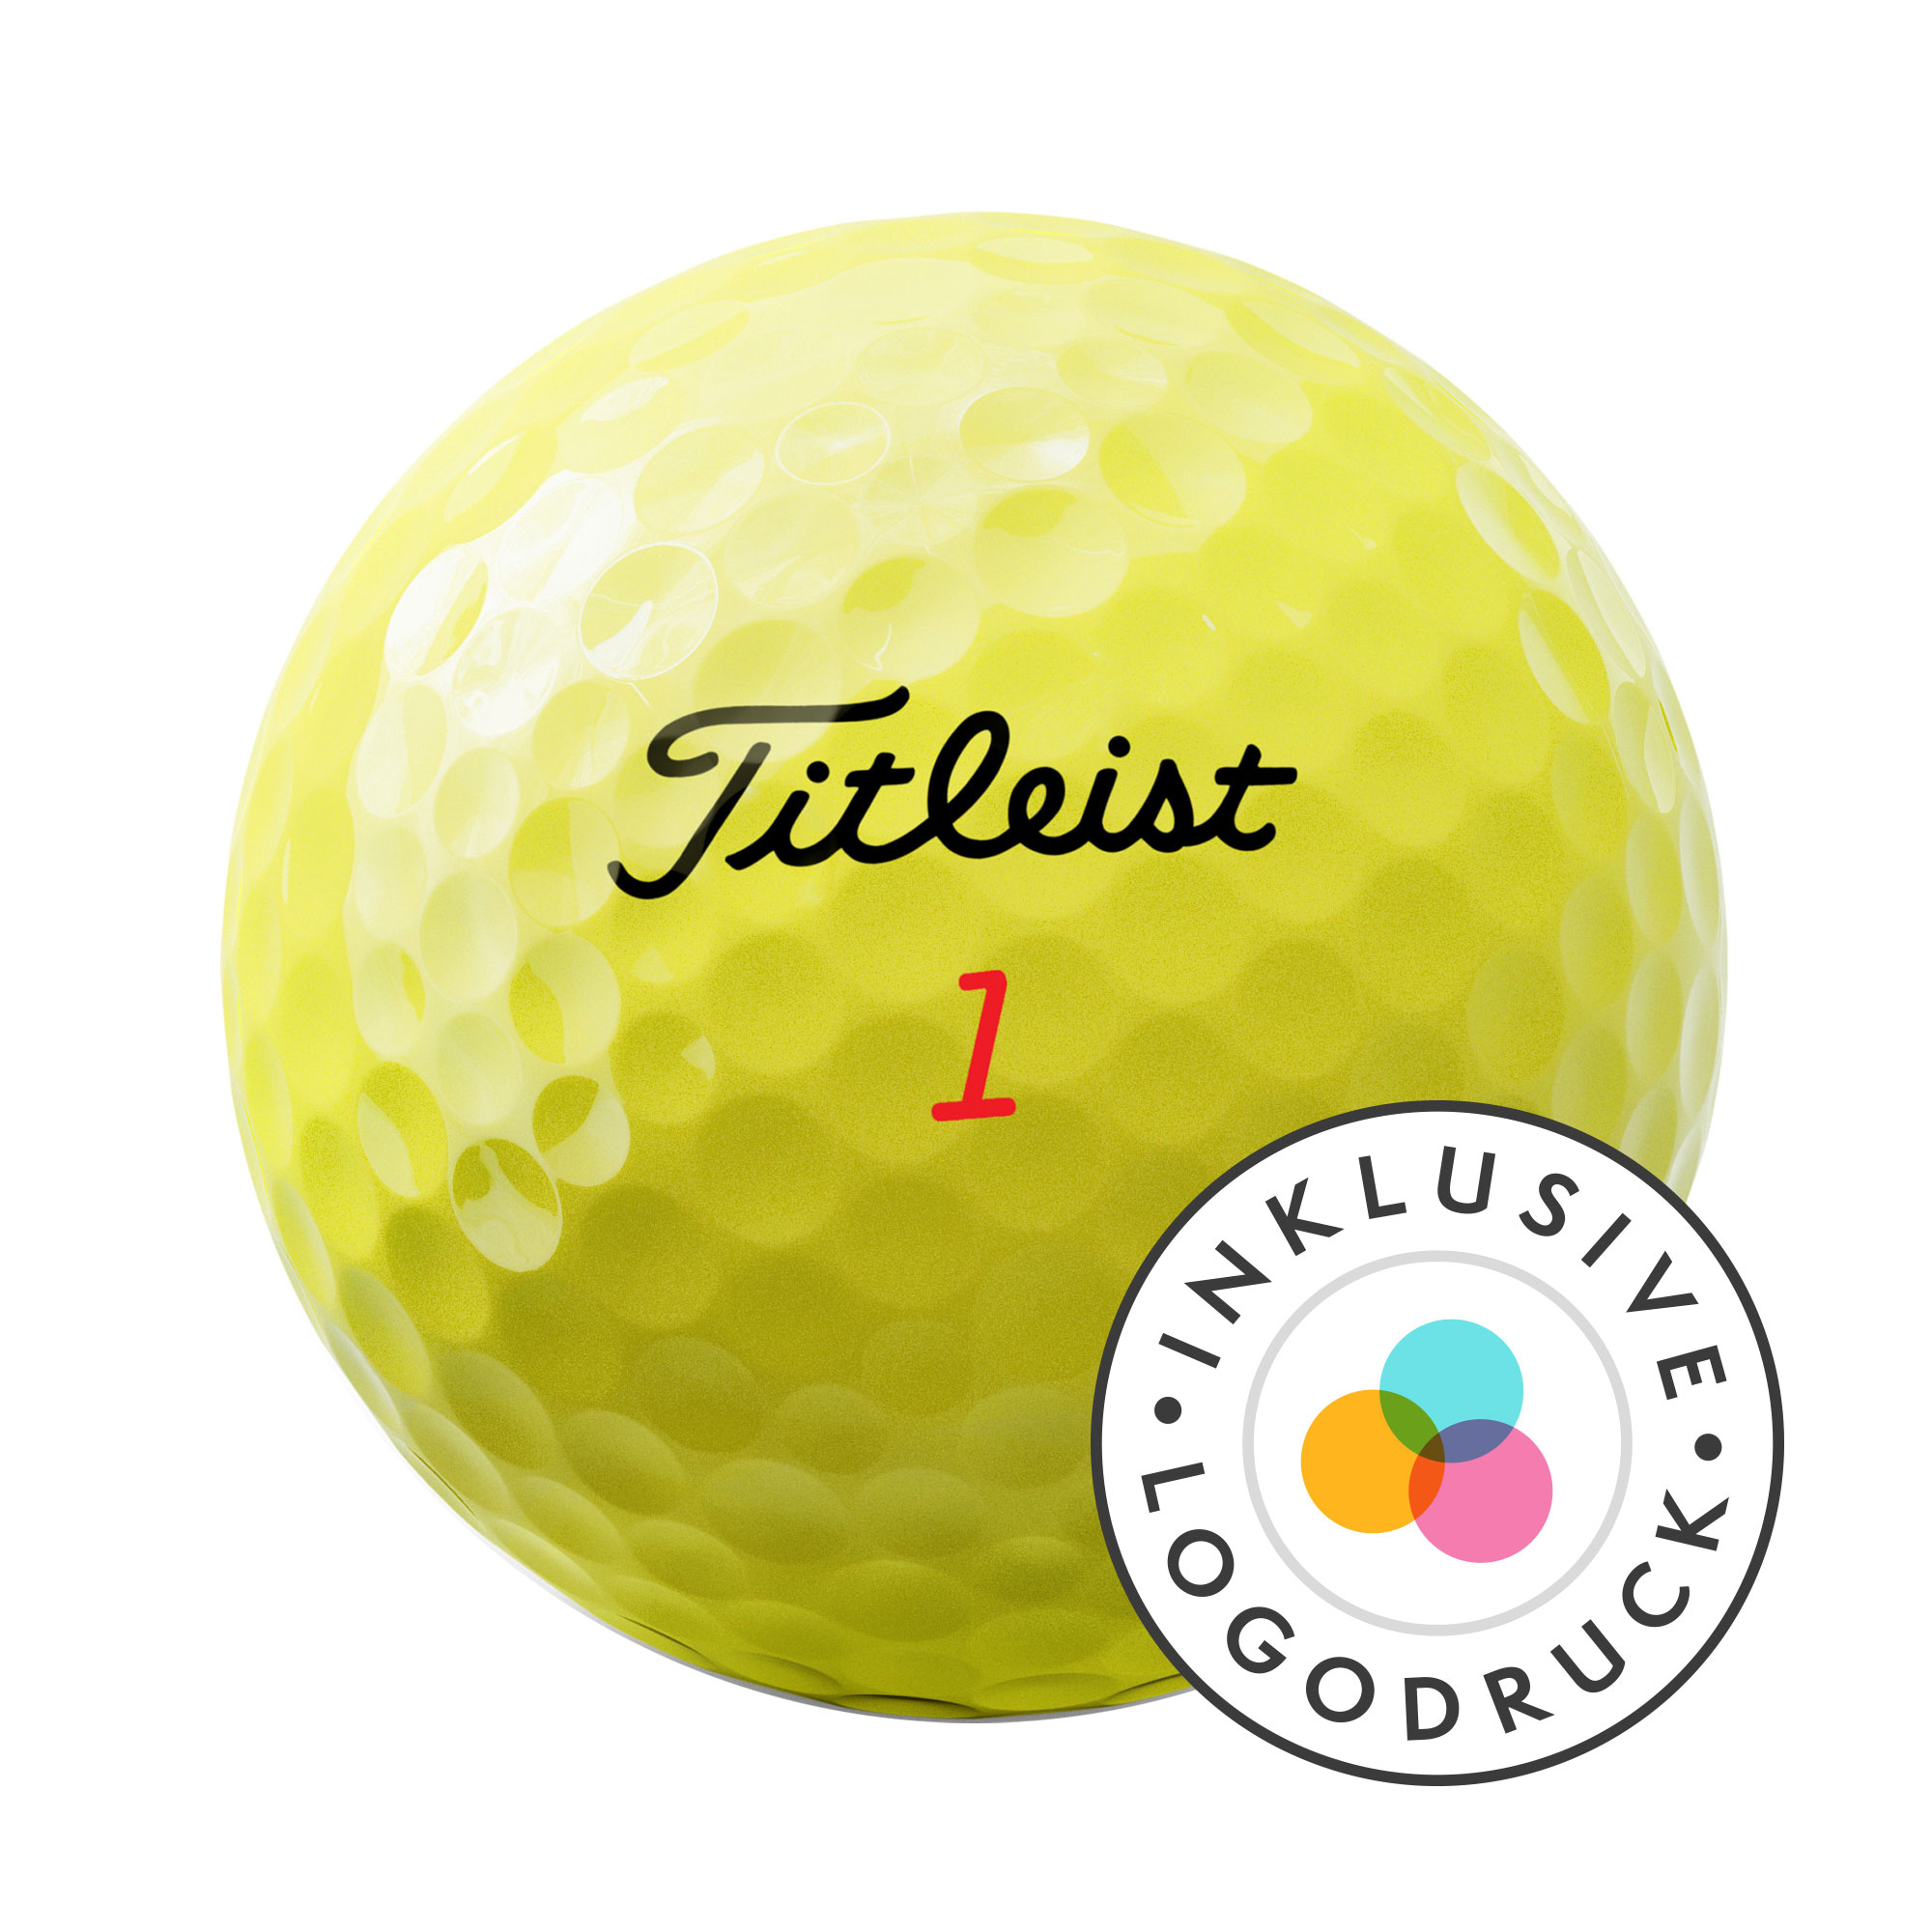 Titleist TruFeel Golfbälle bedruckt, gelb (VPE à 12 Bälle)